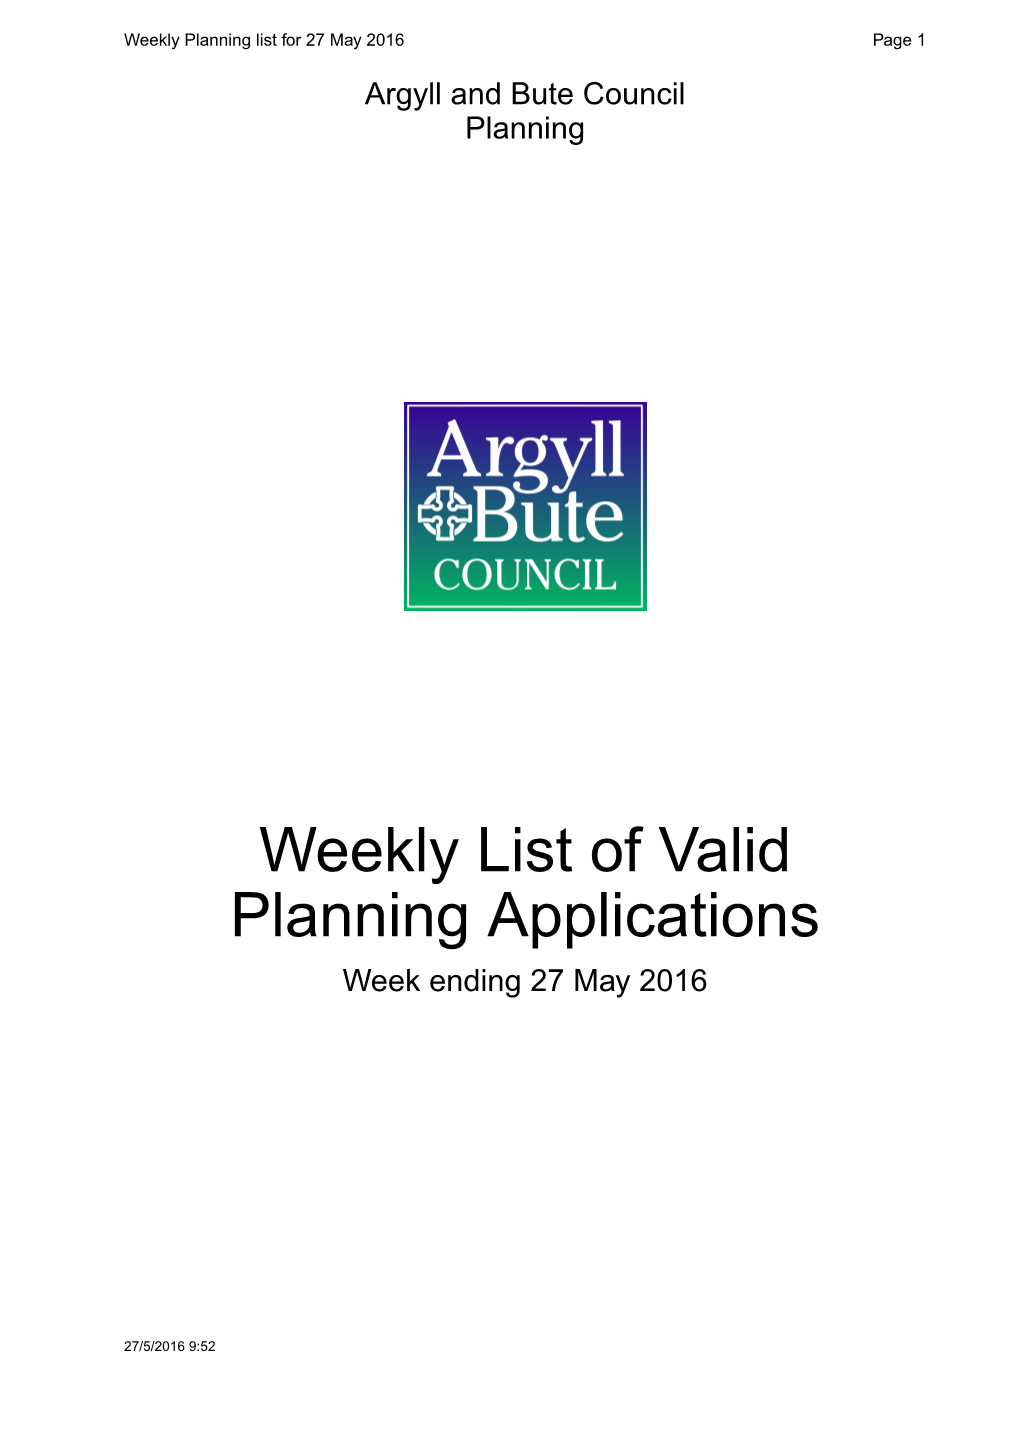 Weekly List of Valid Planning Applications Week Ending 27 May2016